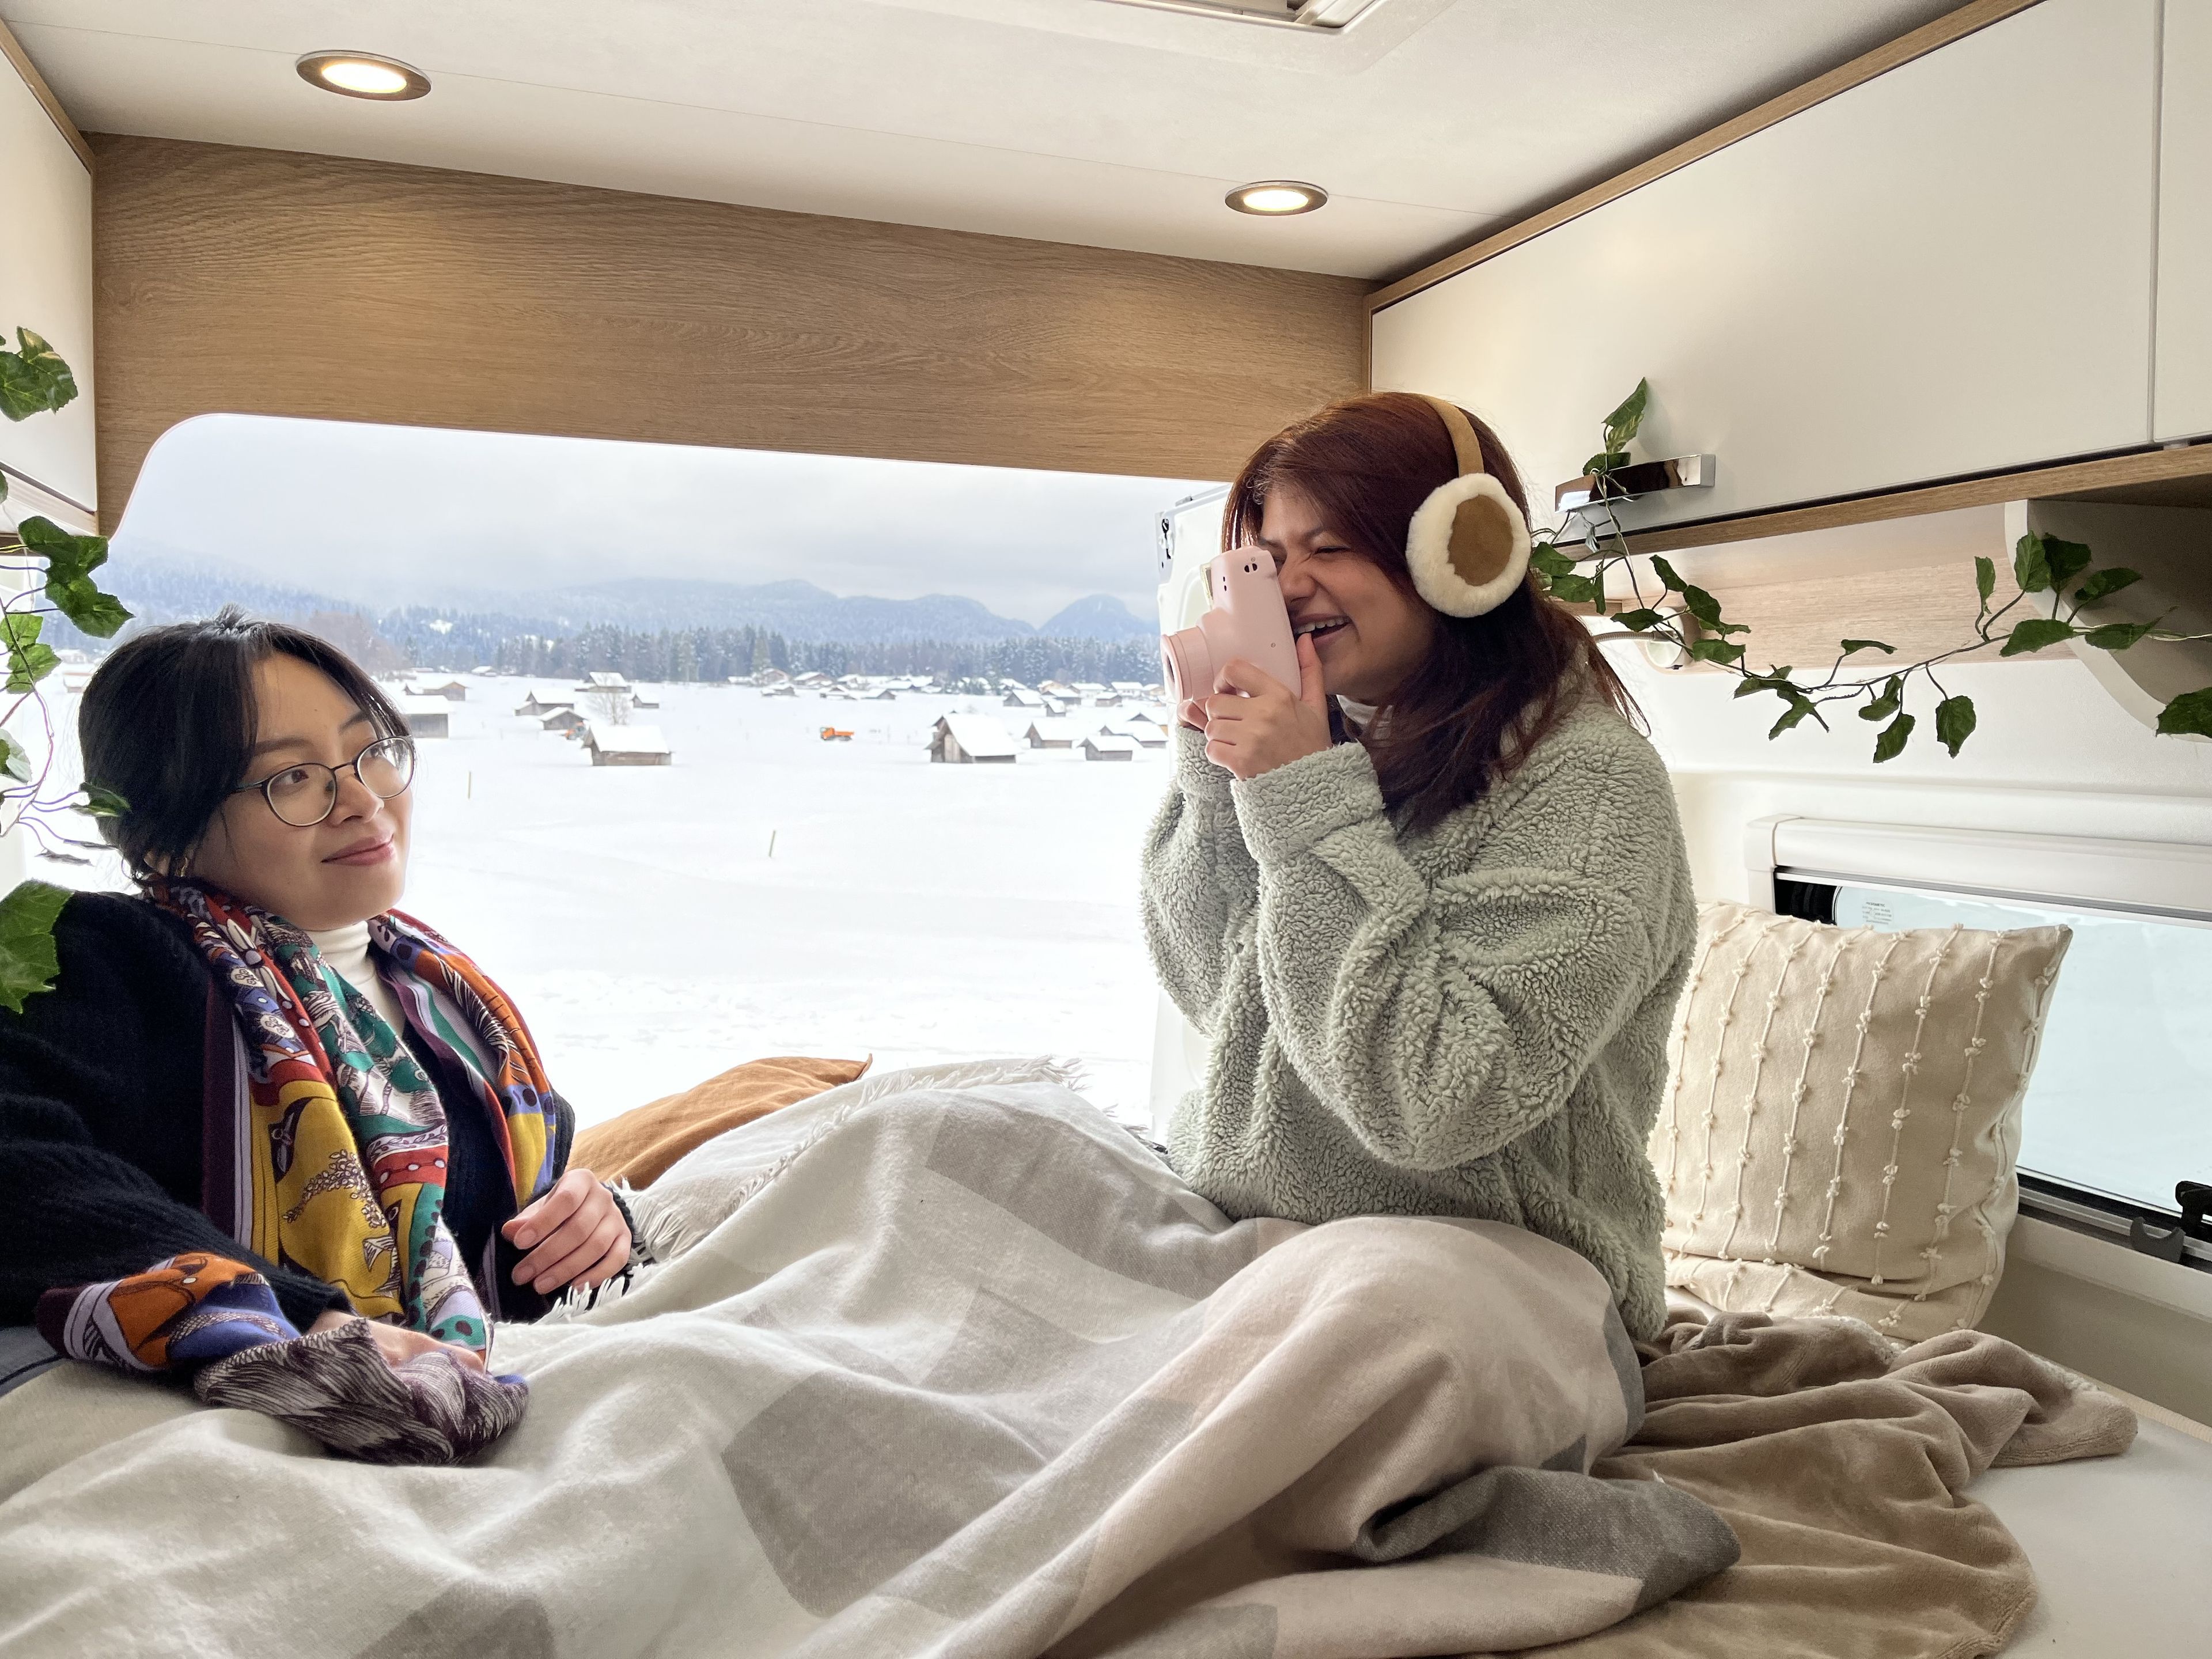 una ragazza che fotografa la sua amica con una macchina fotografica istantanea su un grande e comodo letto di un camper in un inverno innevato. Il letto è ben decorato con luci fiabesche, piante finte, coperte e cuscini caldi